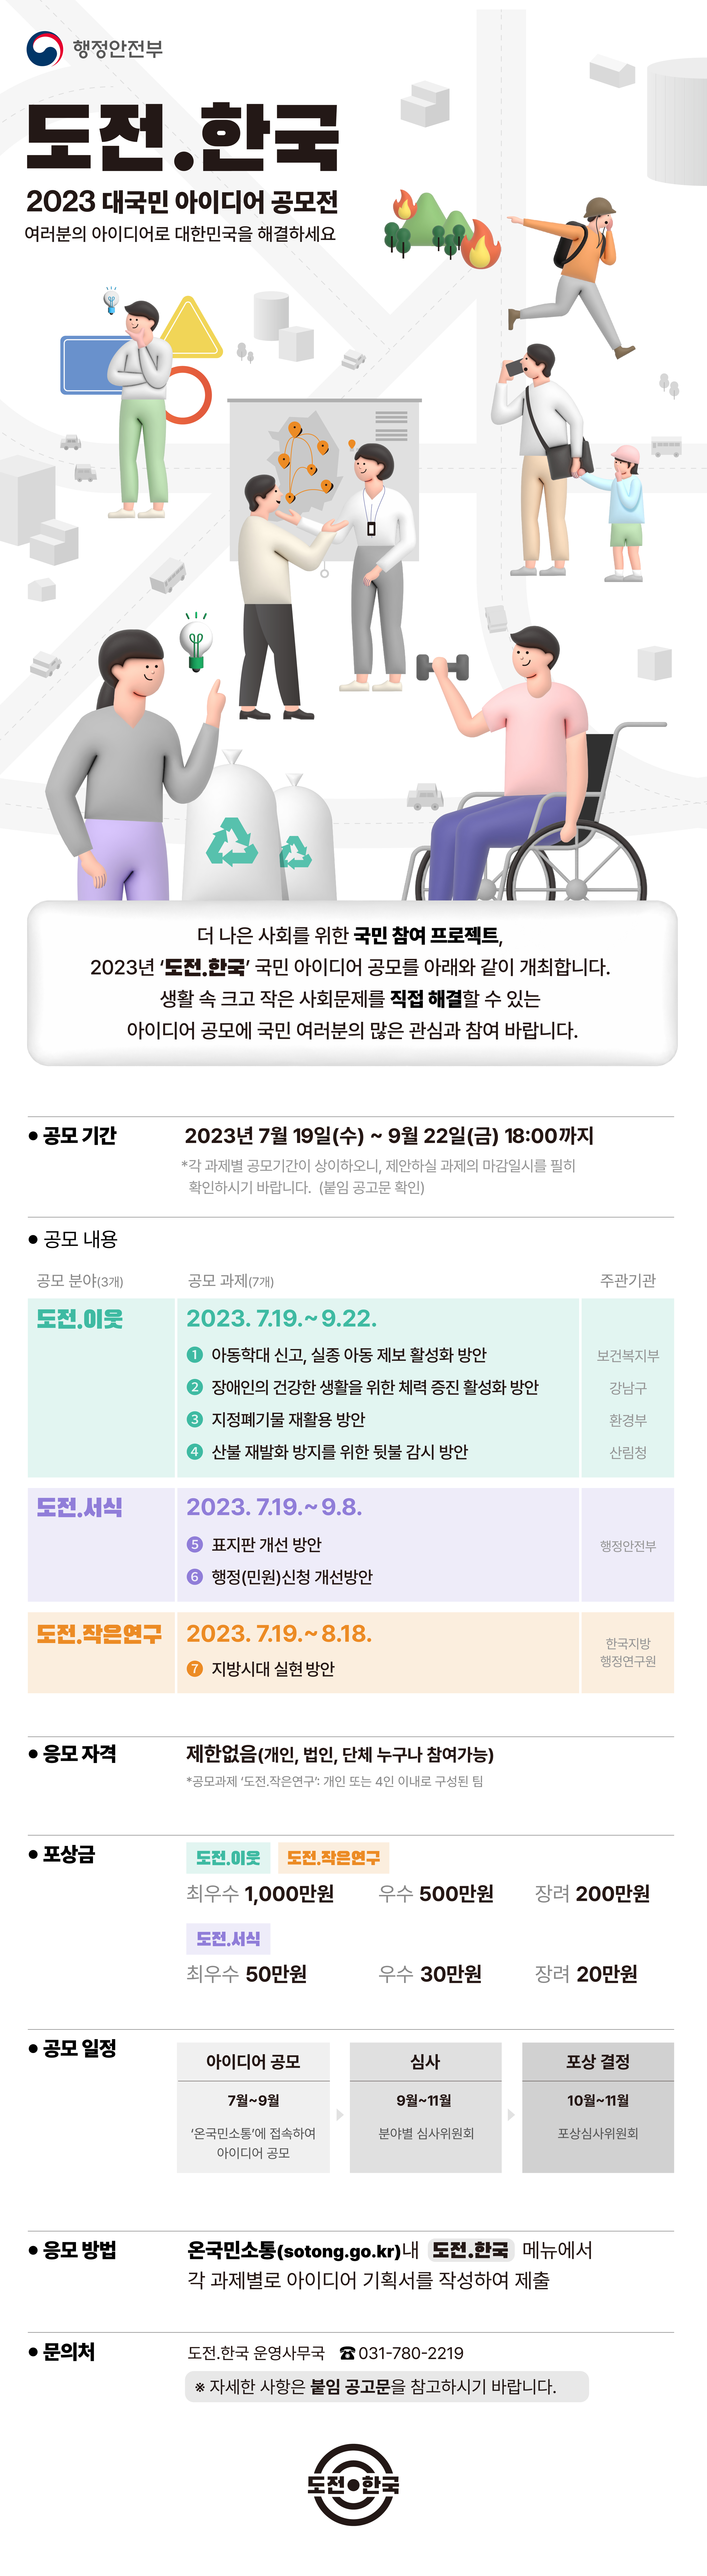 2023년 '도전.한국' 하반기 공모전 개최 안내 3